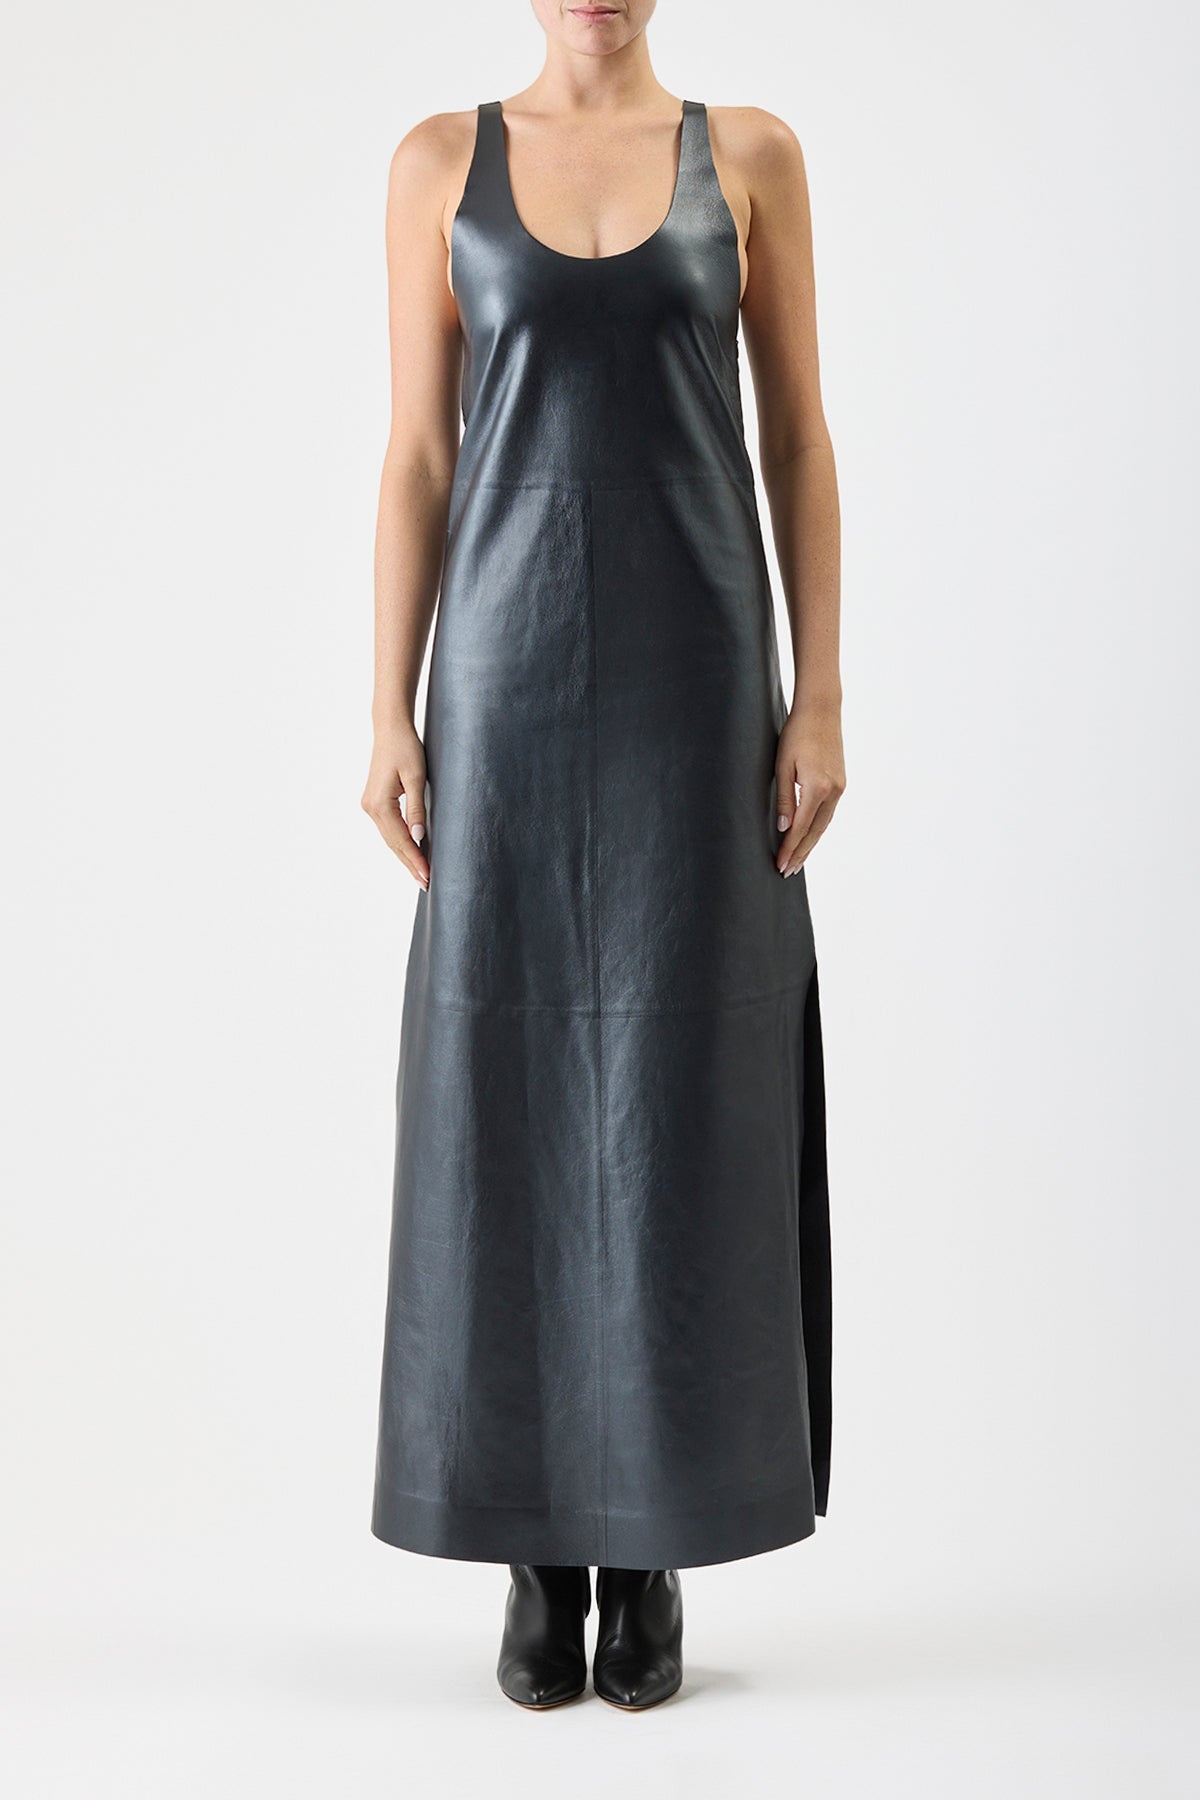 Ellson Dress in Leather - 3